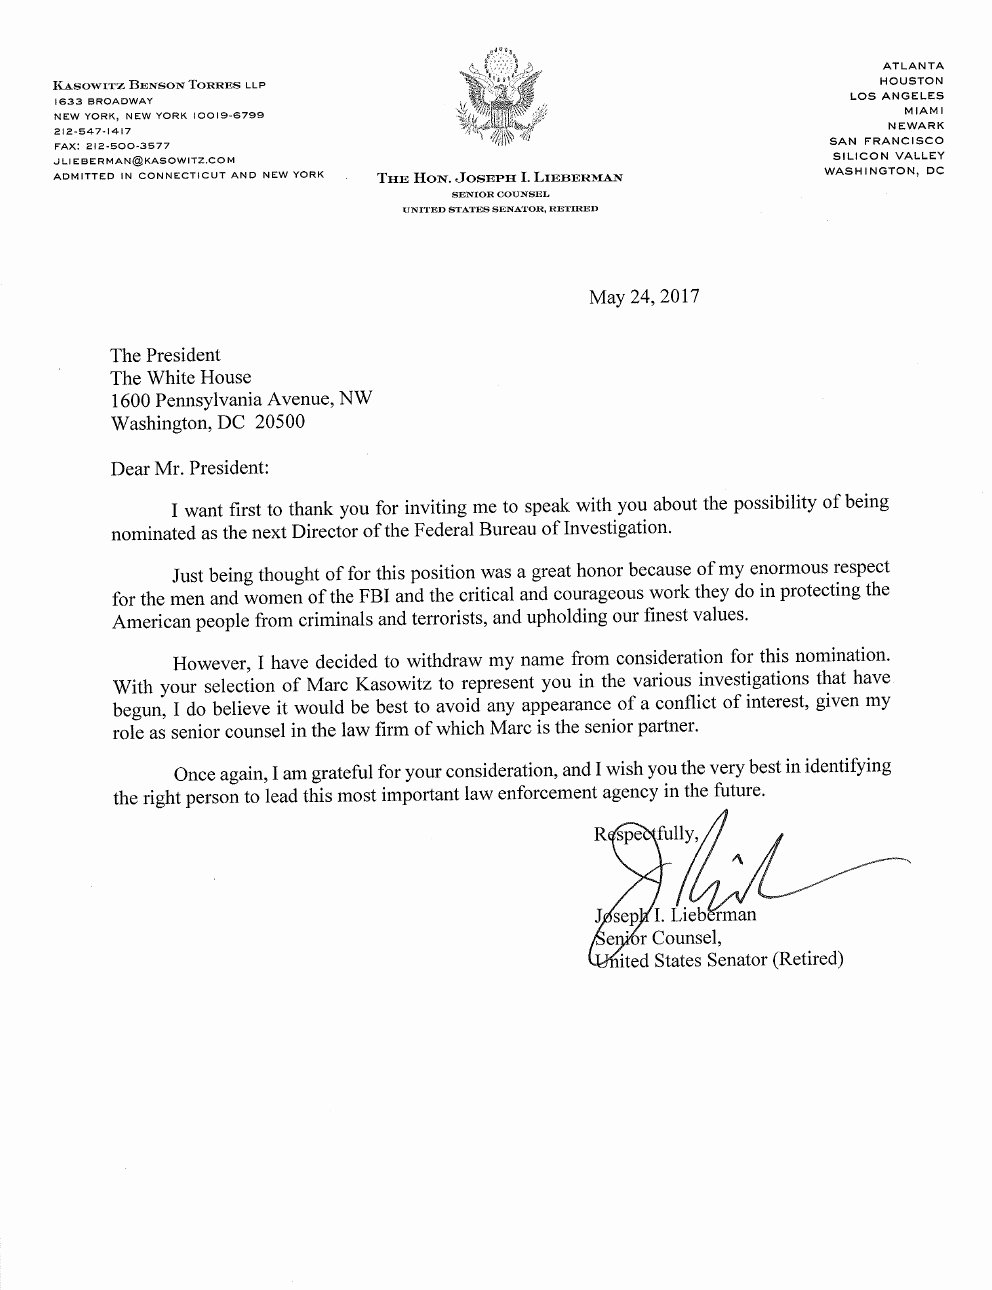 Letter to President format Fresh Usa Joseph Lieberman Letter to President Trump asking to